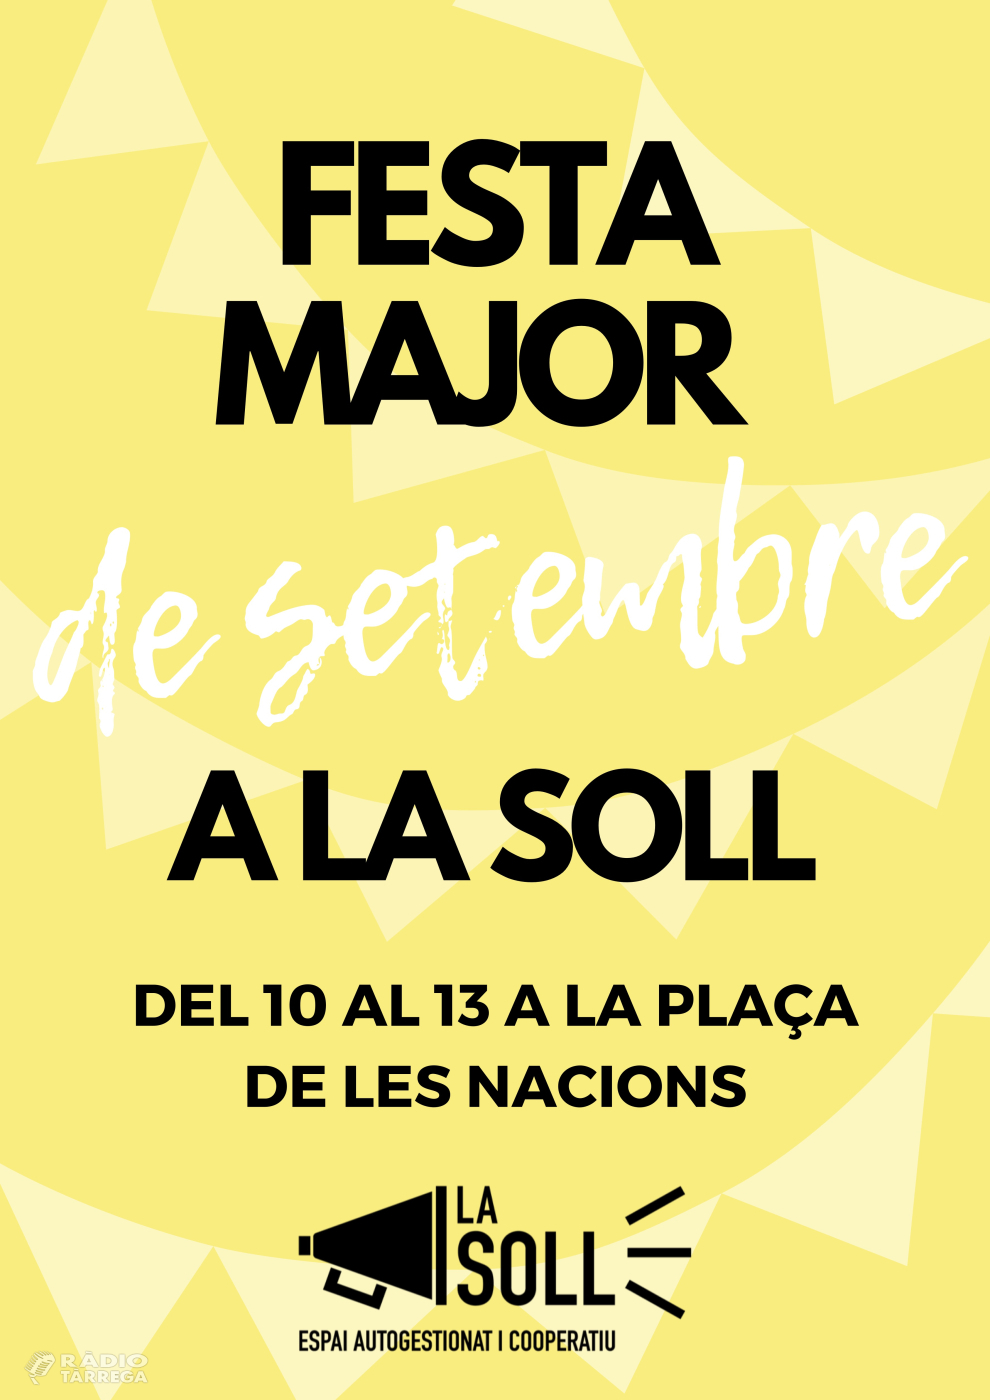 La Soll reivindica la Festa Major de setembre amb una programació amb set actuacions musicals, un show de màgia i un debat cultural